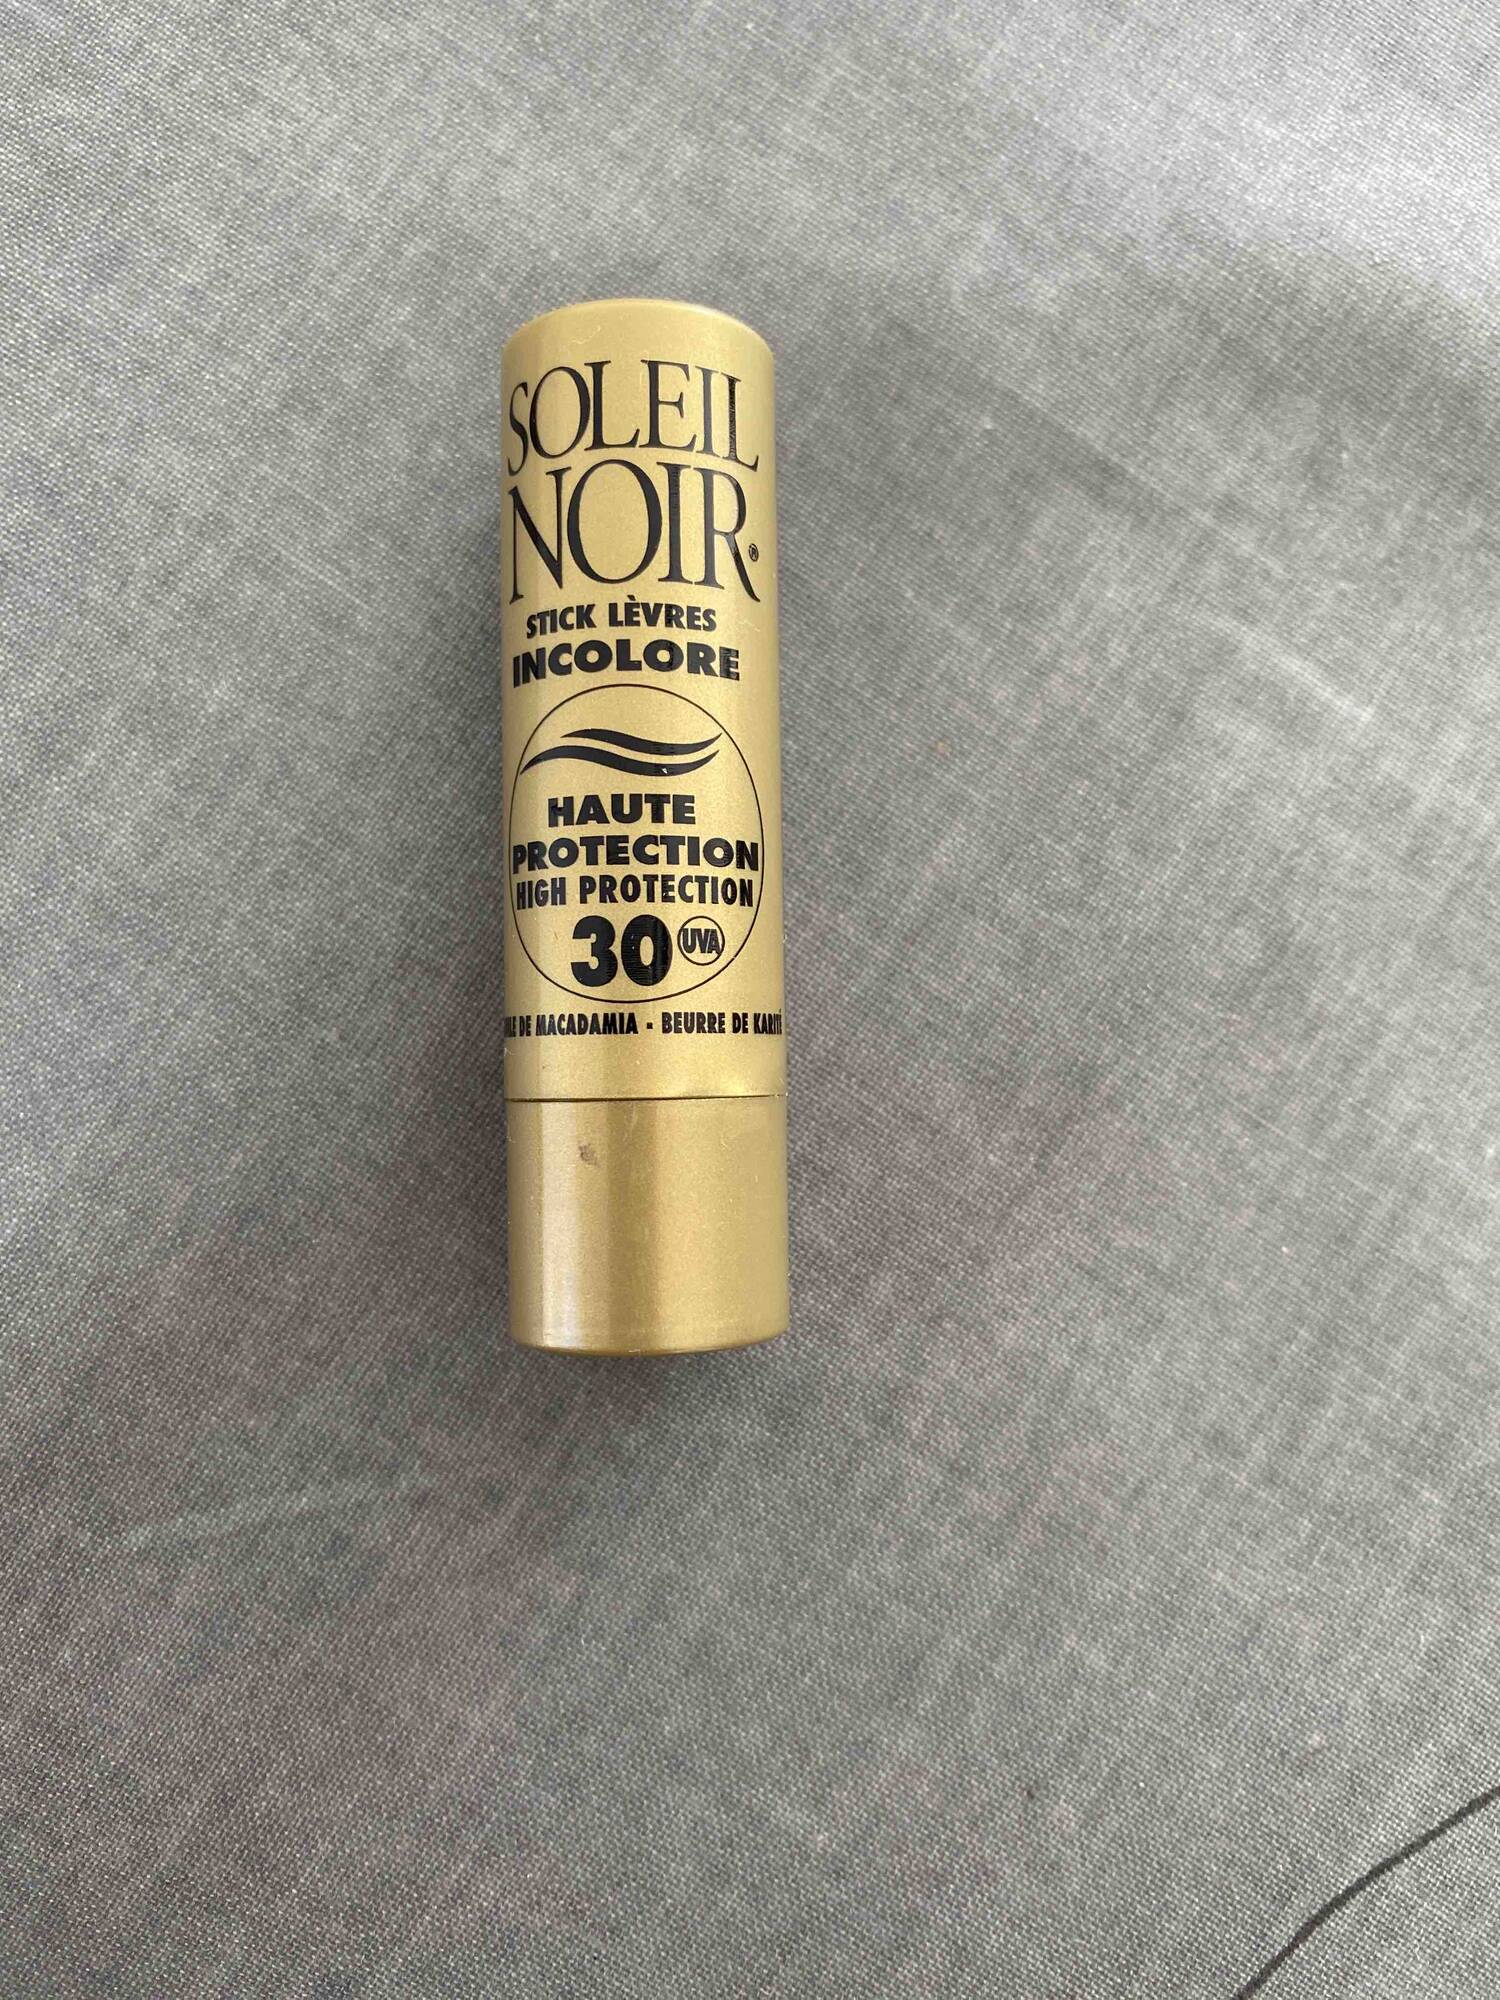 SOLEIL NOIR - Stick lèvres incolore